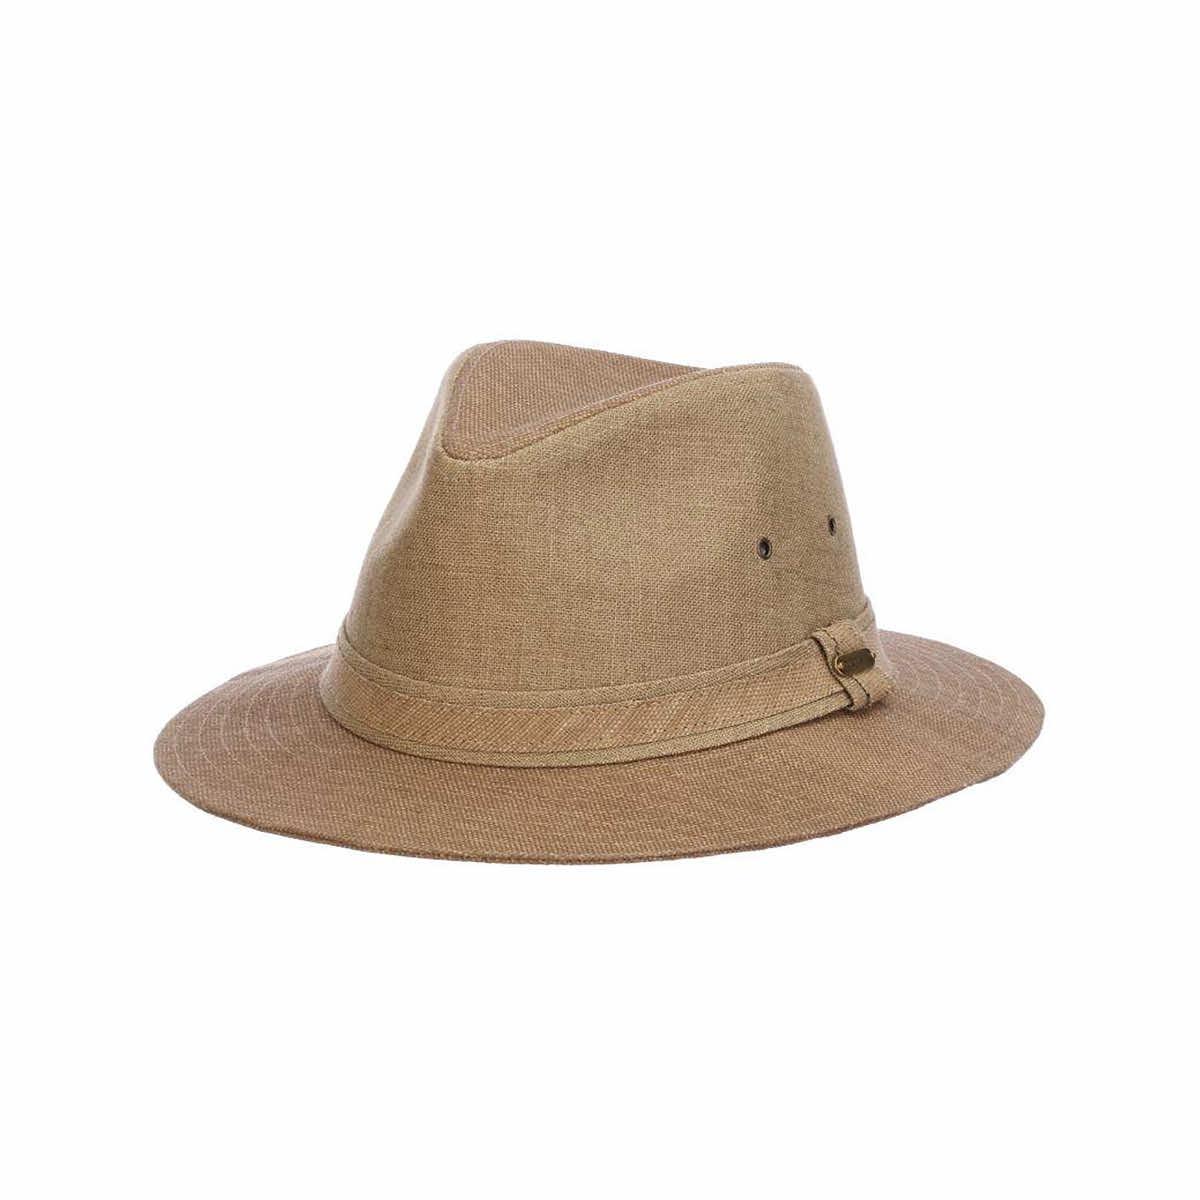 Mast General Store  Men's Colton Toyo Safari Hat